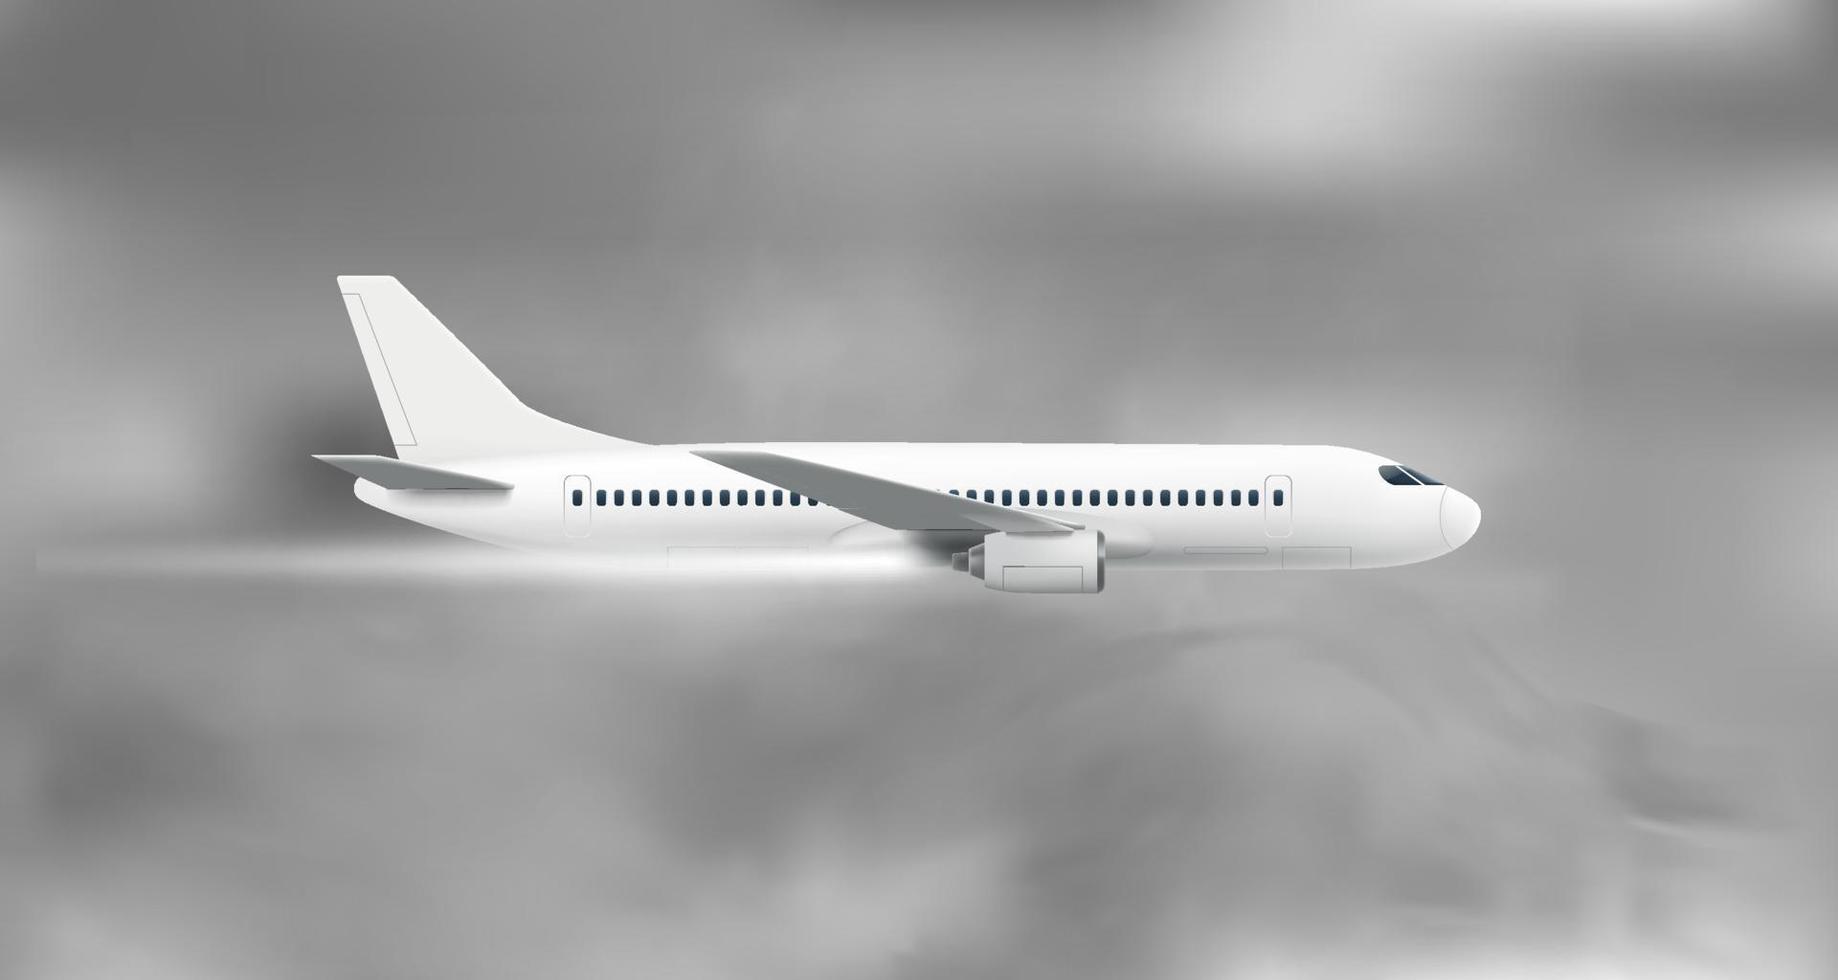 voler un avion moderne volant dans un ciel sombre avec des nuages. concept de voyage aérien. illustration vectorielle 3d vecteur